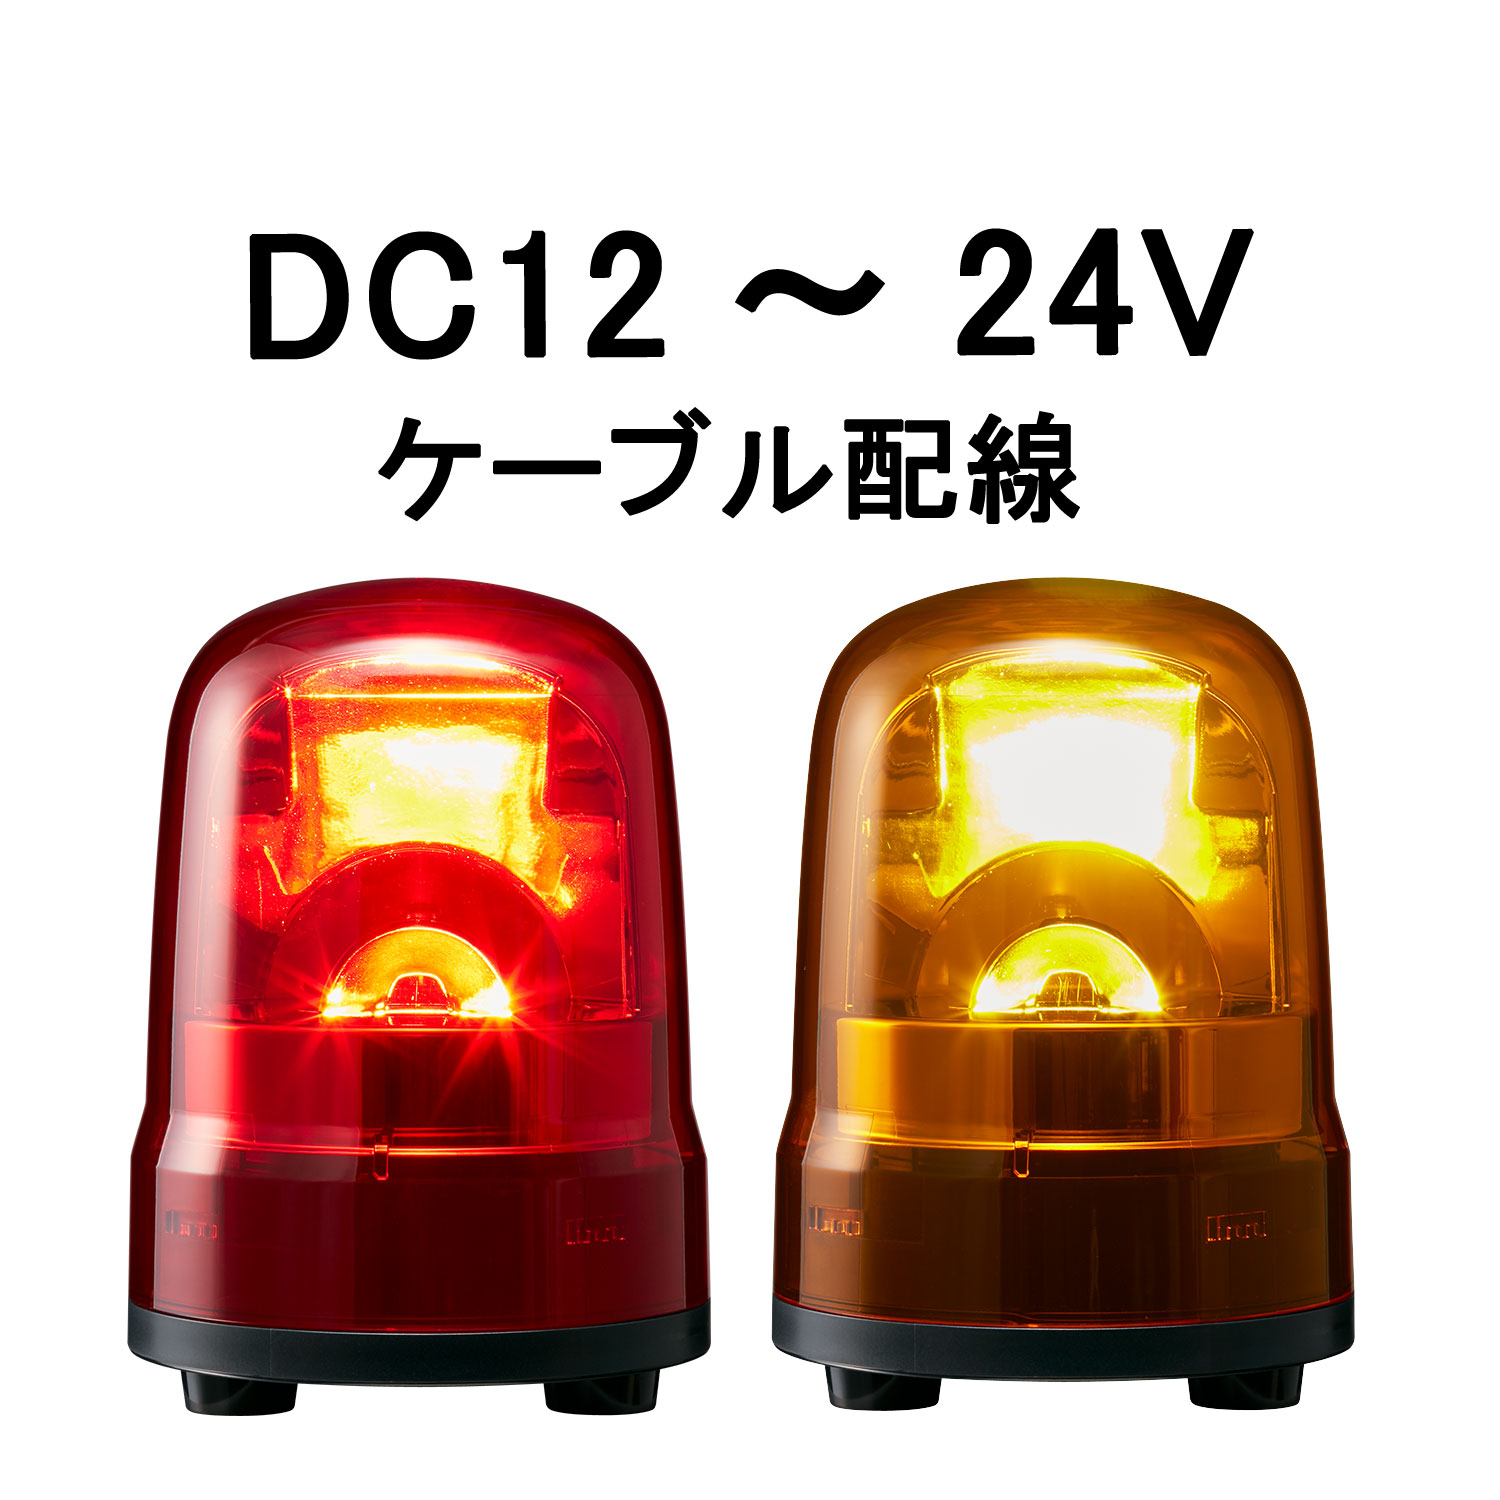 パトライト LED回転灯 SFシリーズ φ100mm DC12/DC24 2点穴式取付